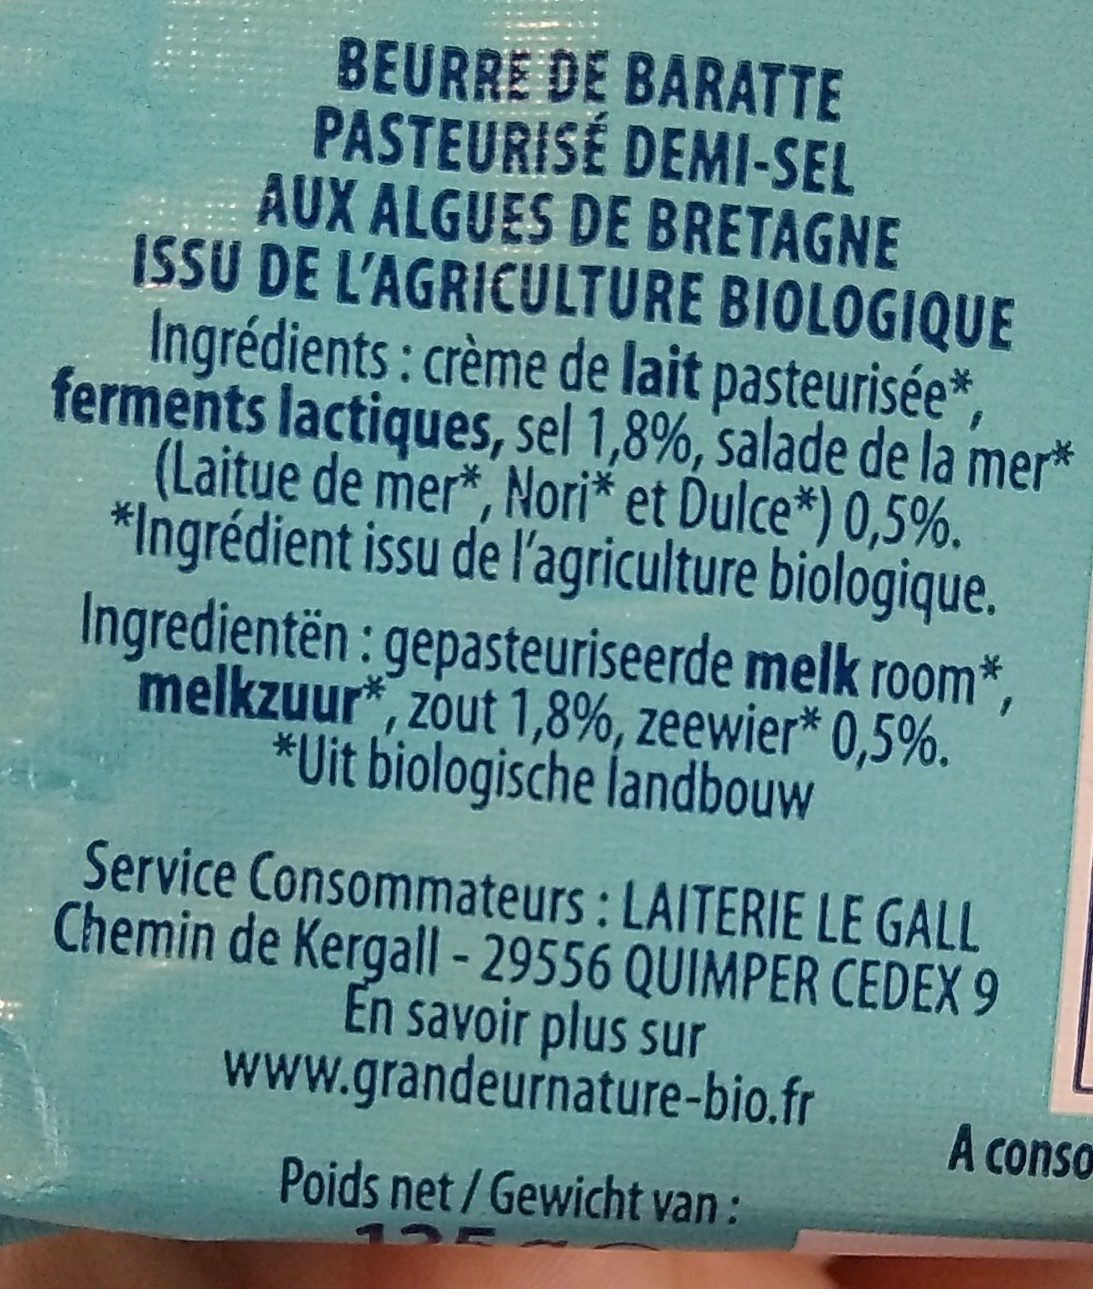 Beurre de baratte biologique aux algues de Bretagne - Ingredients - fr